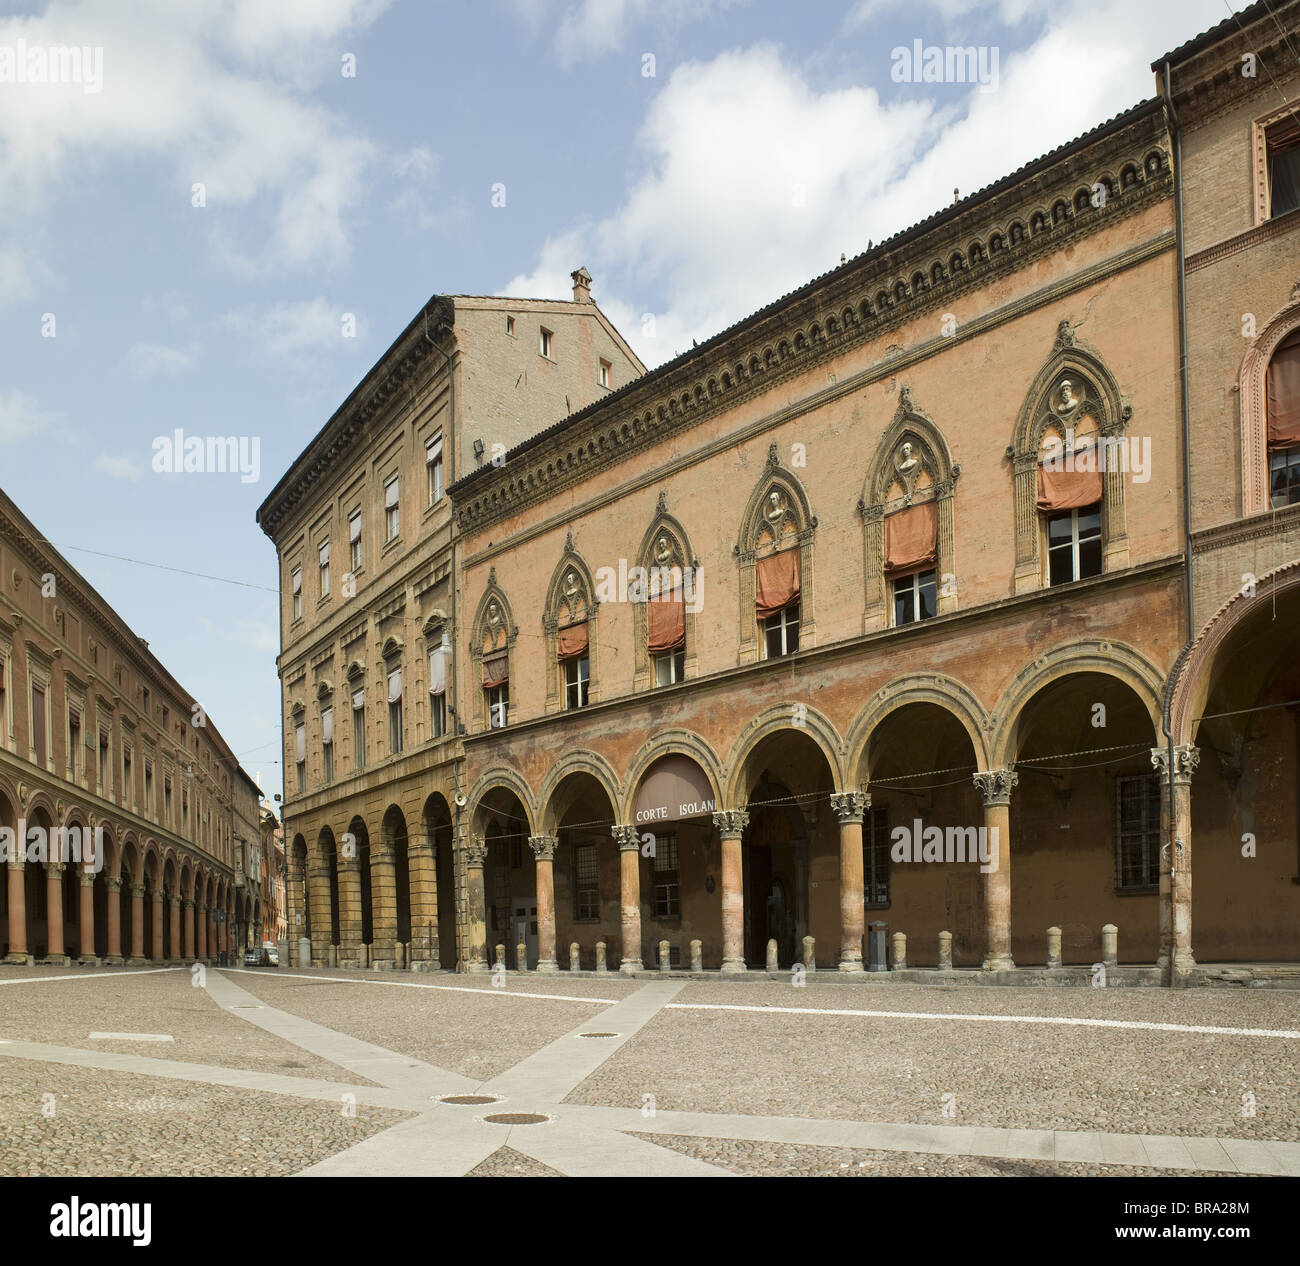 Bolgona, Italien. Piazza Santo Stefano, typisch für Bologna Stadtplanung - Säulen und Arkaden Stockfoto